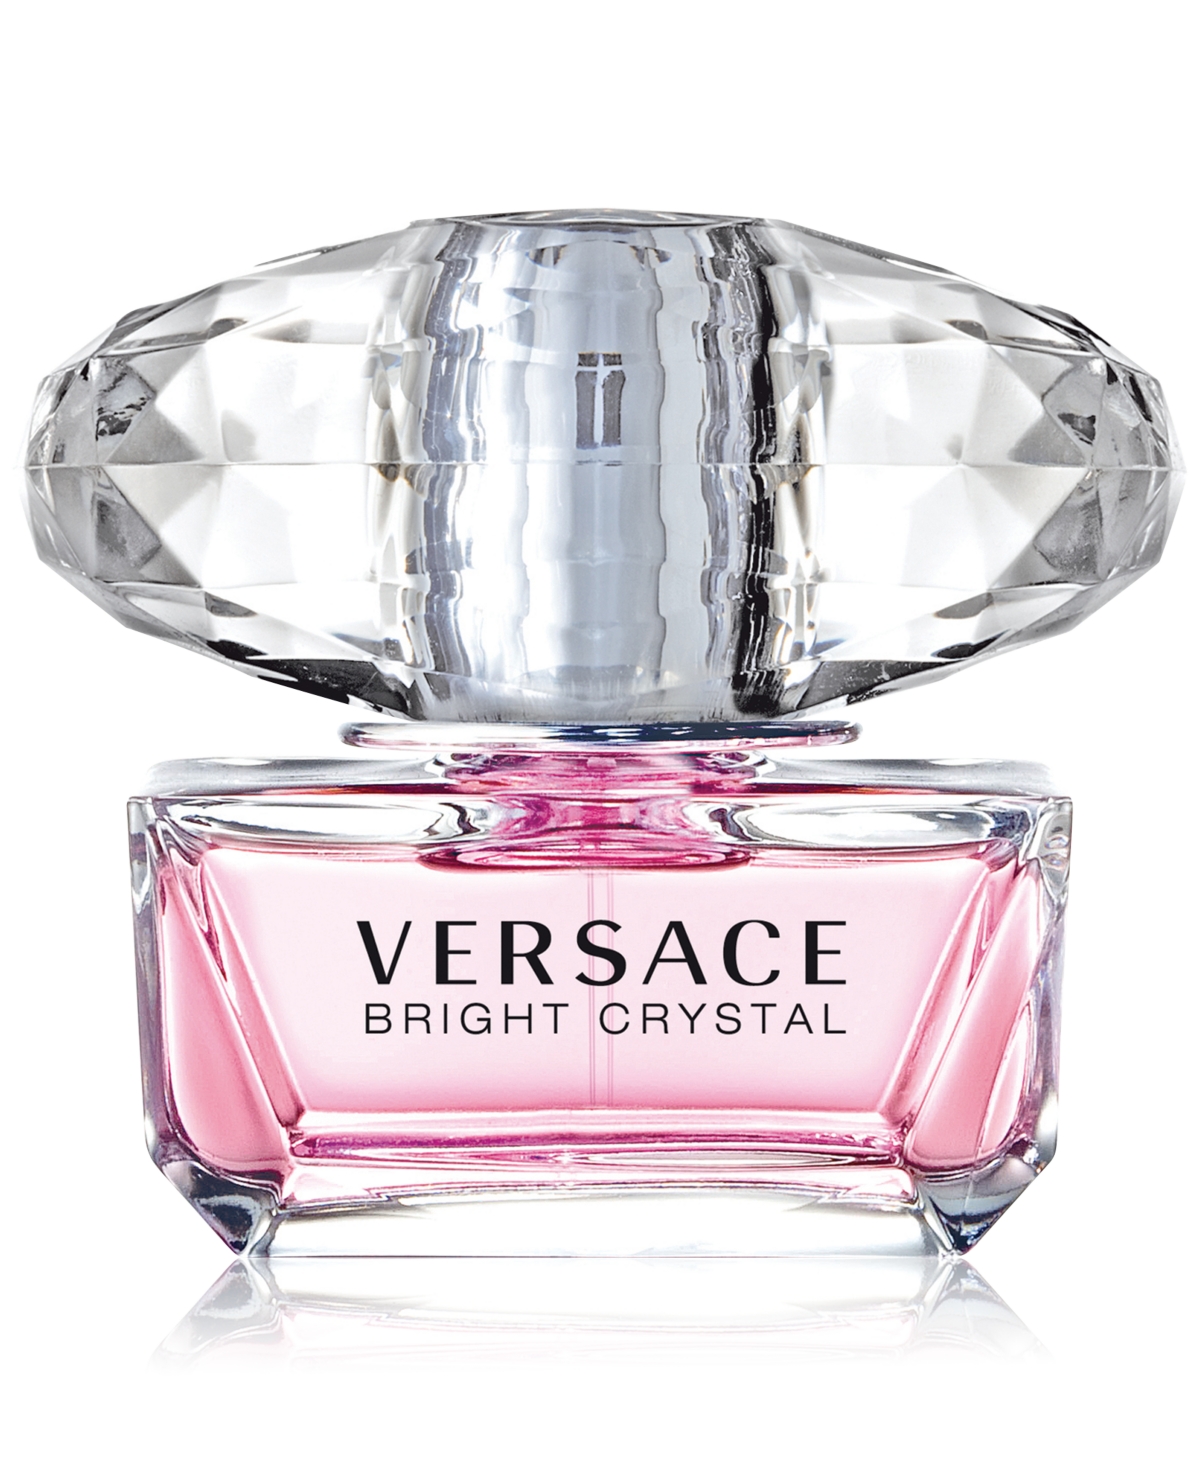 Versace Bright Crystal Eau de Toilette, 1.7 oz